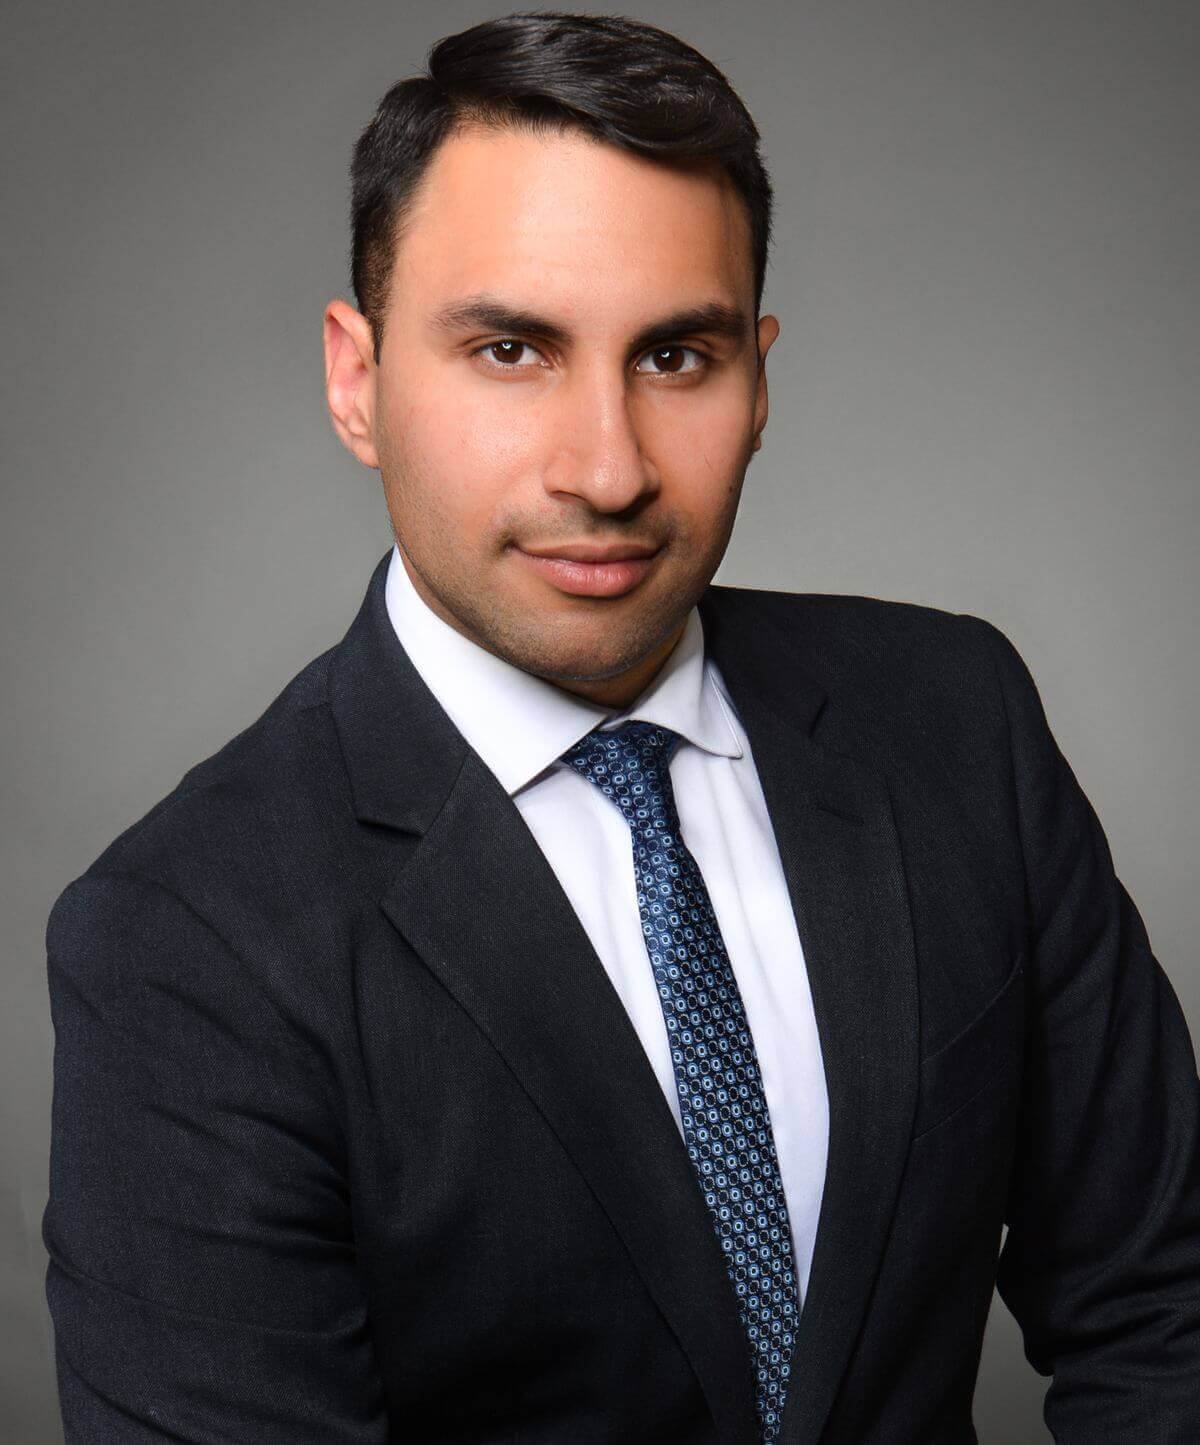 Toronto Employment Lawyer | Toronto Employment Lawyer